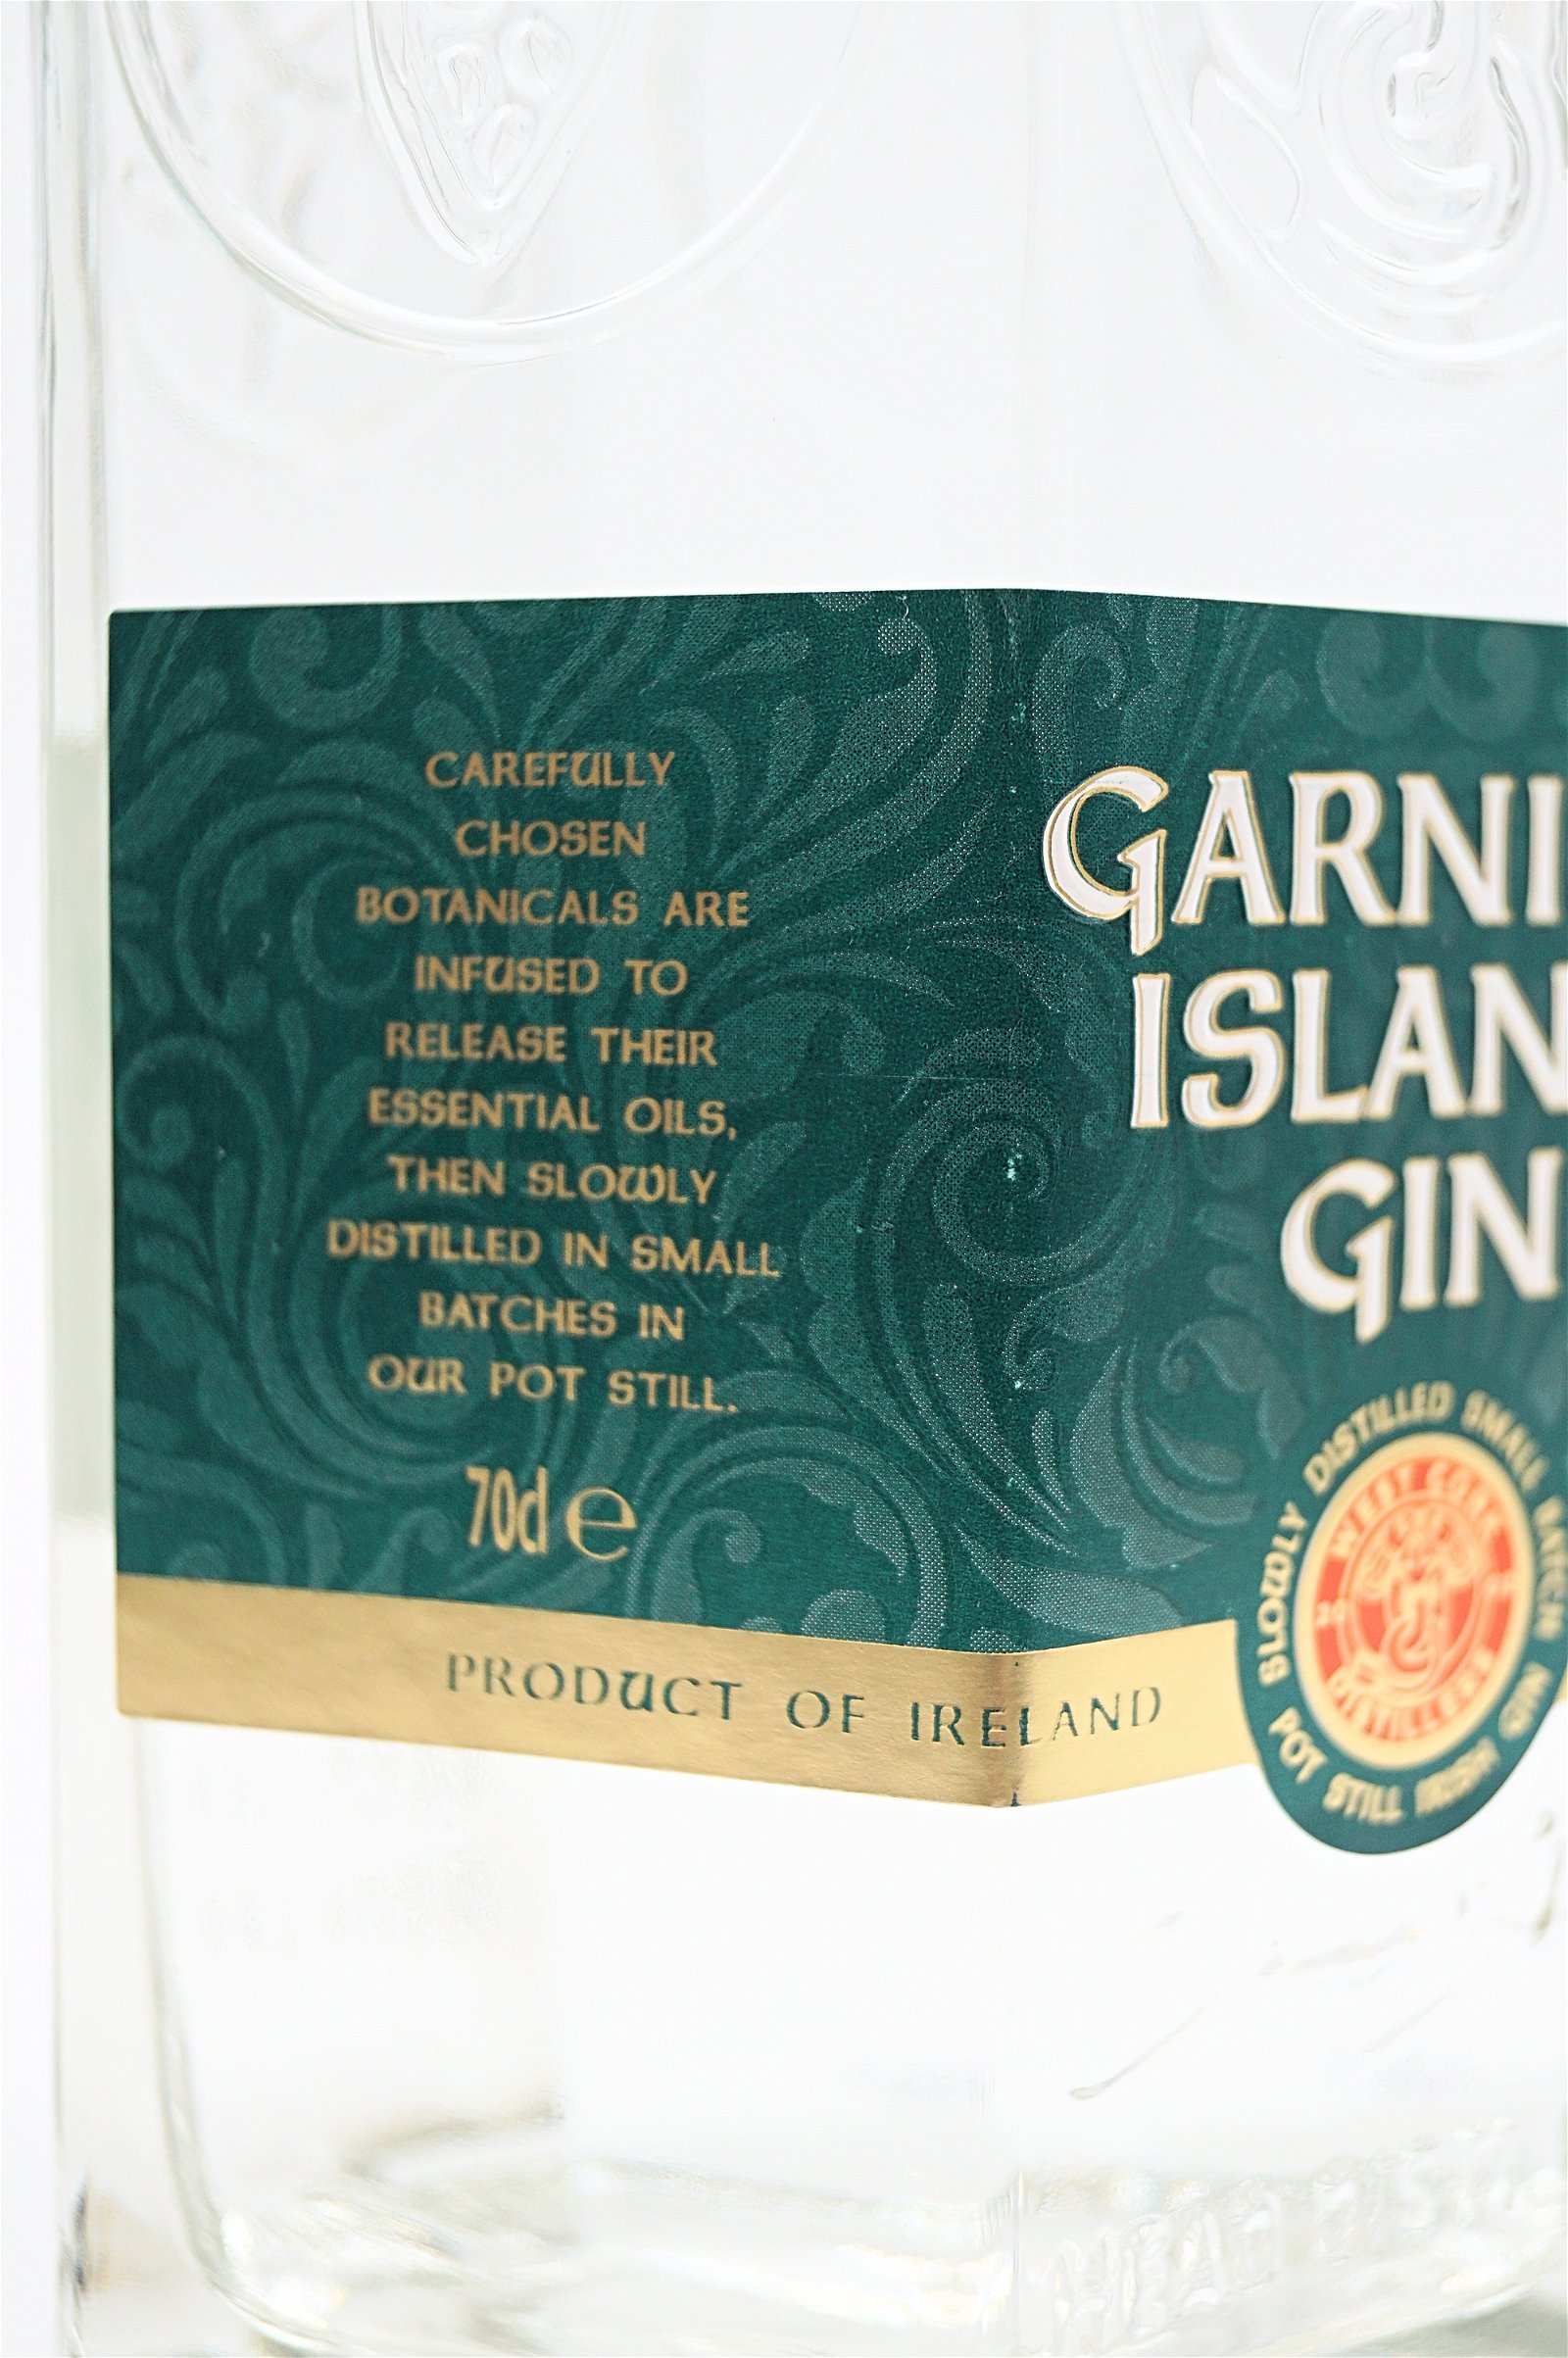 Garnish Island Gin Irish